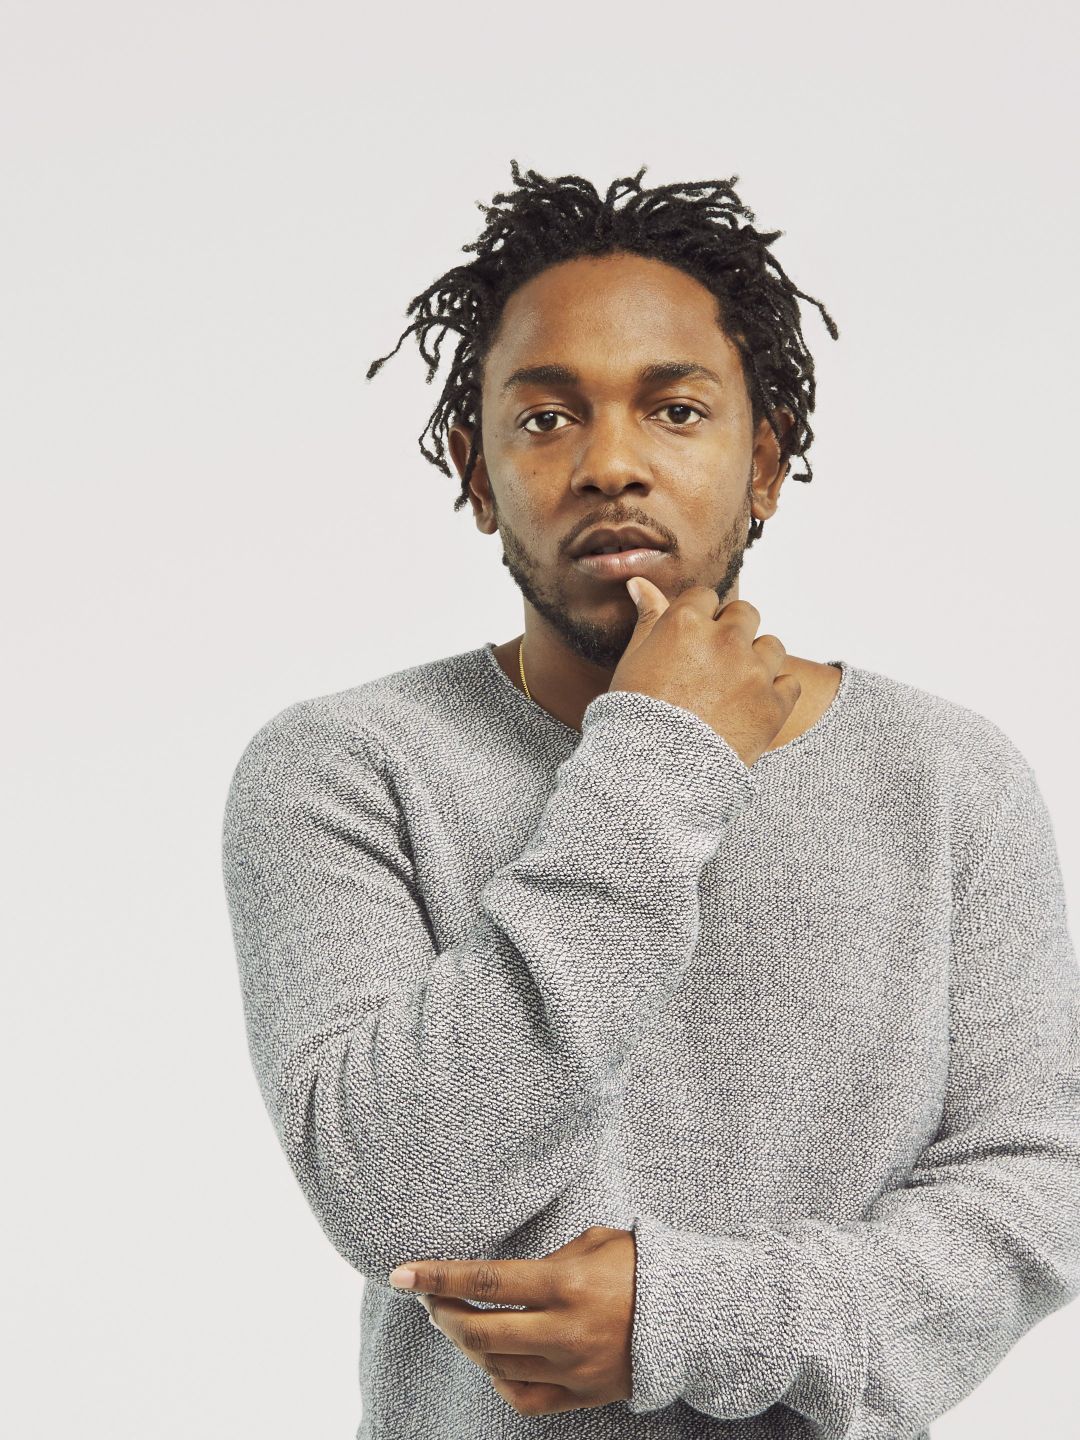 Kendrick Lamar parents